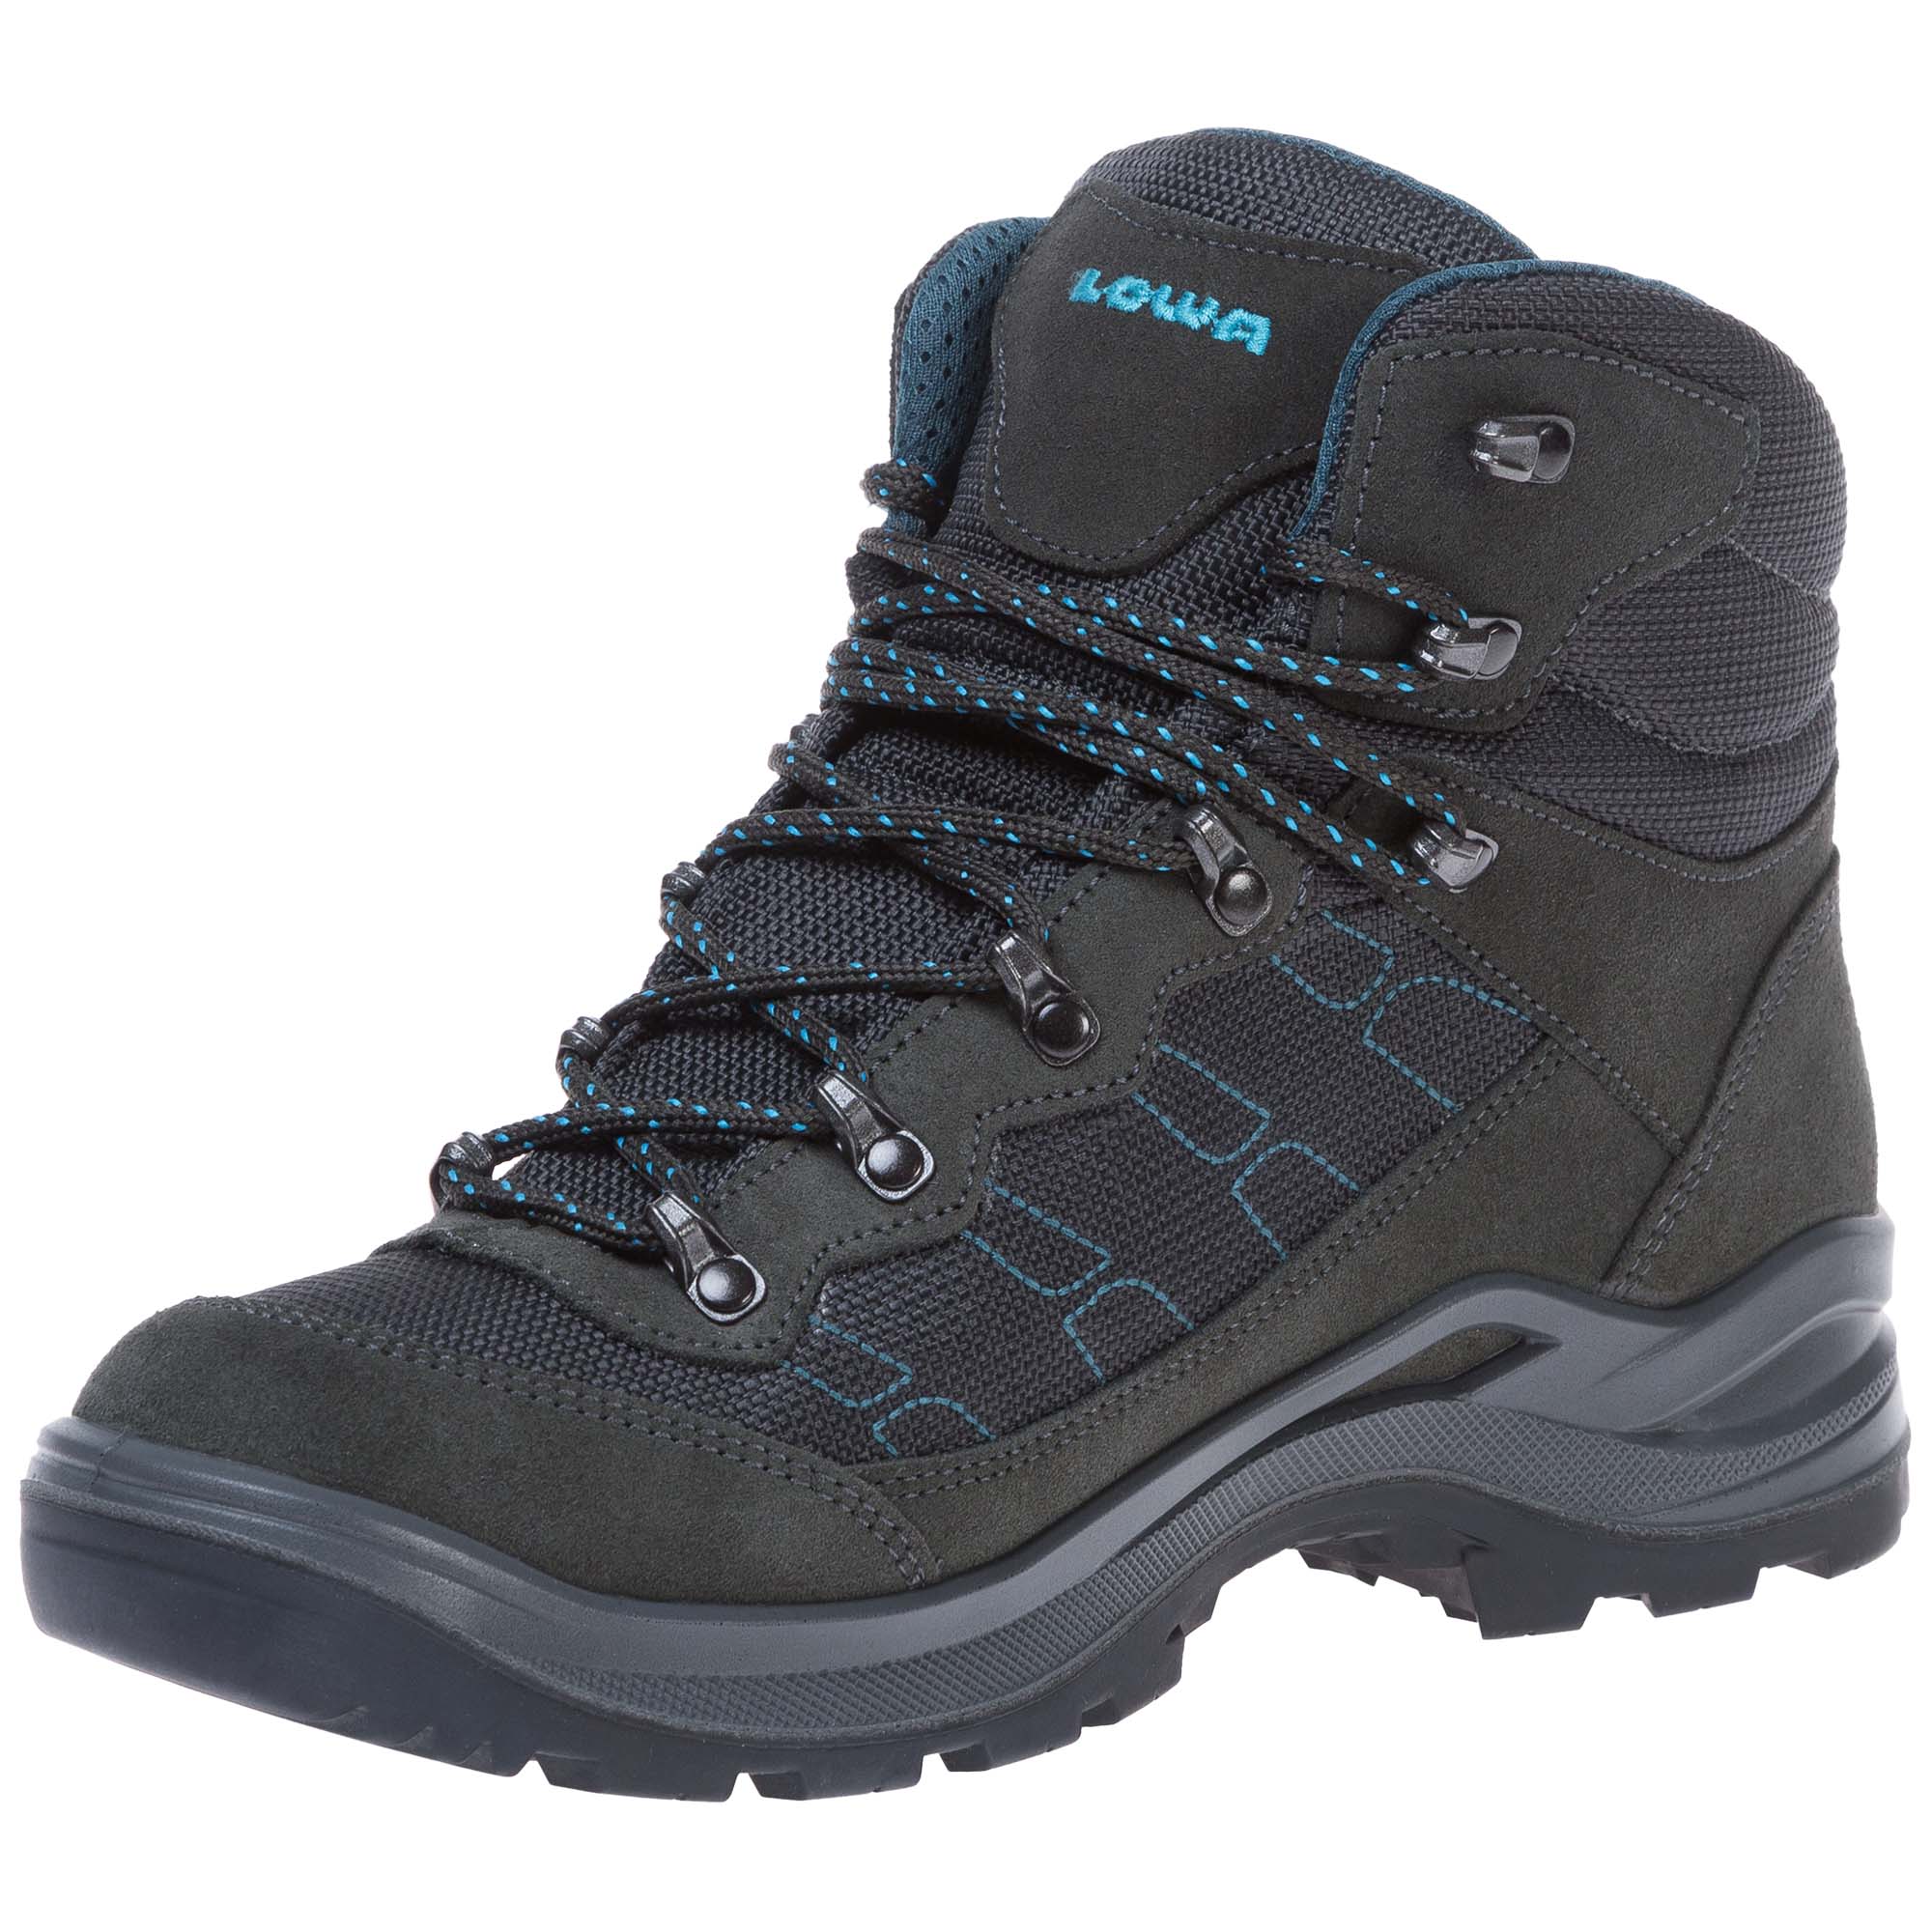 Lowa Taurus Pro GTX Mid Women's Hiking Boots